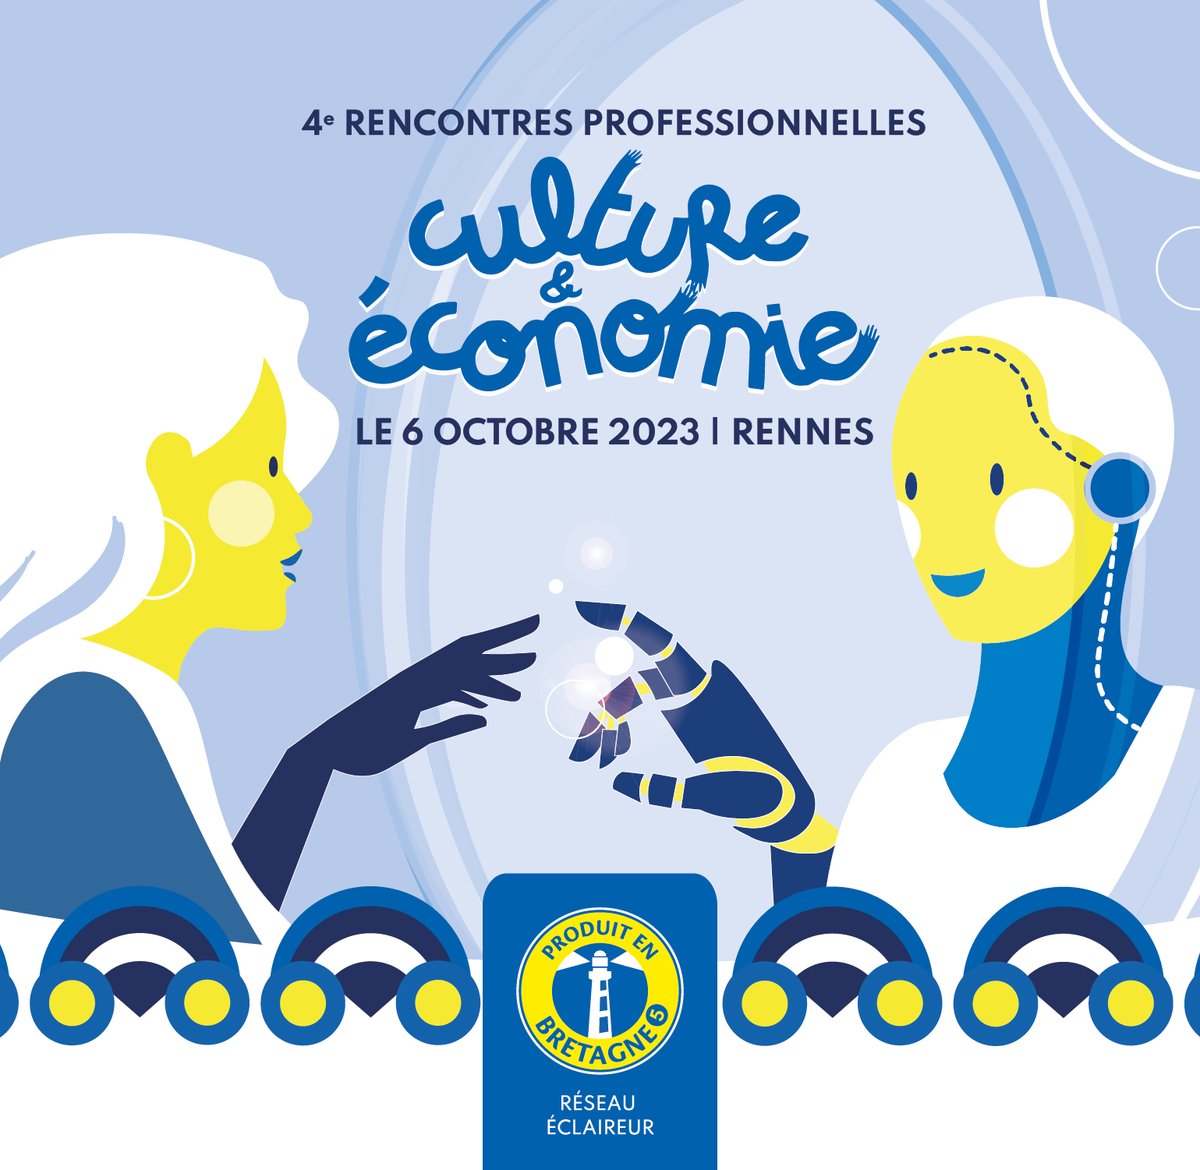 🗓 Rejoignez-nous le 6 octobre à Rennes pour les Rencontres Culture & Économie organisées par @produitenbzh  ! On y animera un atelier sur le financement participatif !
✅Ouvert à toutes les entreprises culturelles et touristiques bretonnes, aux entreprises du territoire,  aux…